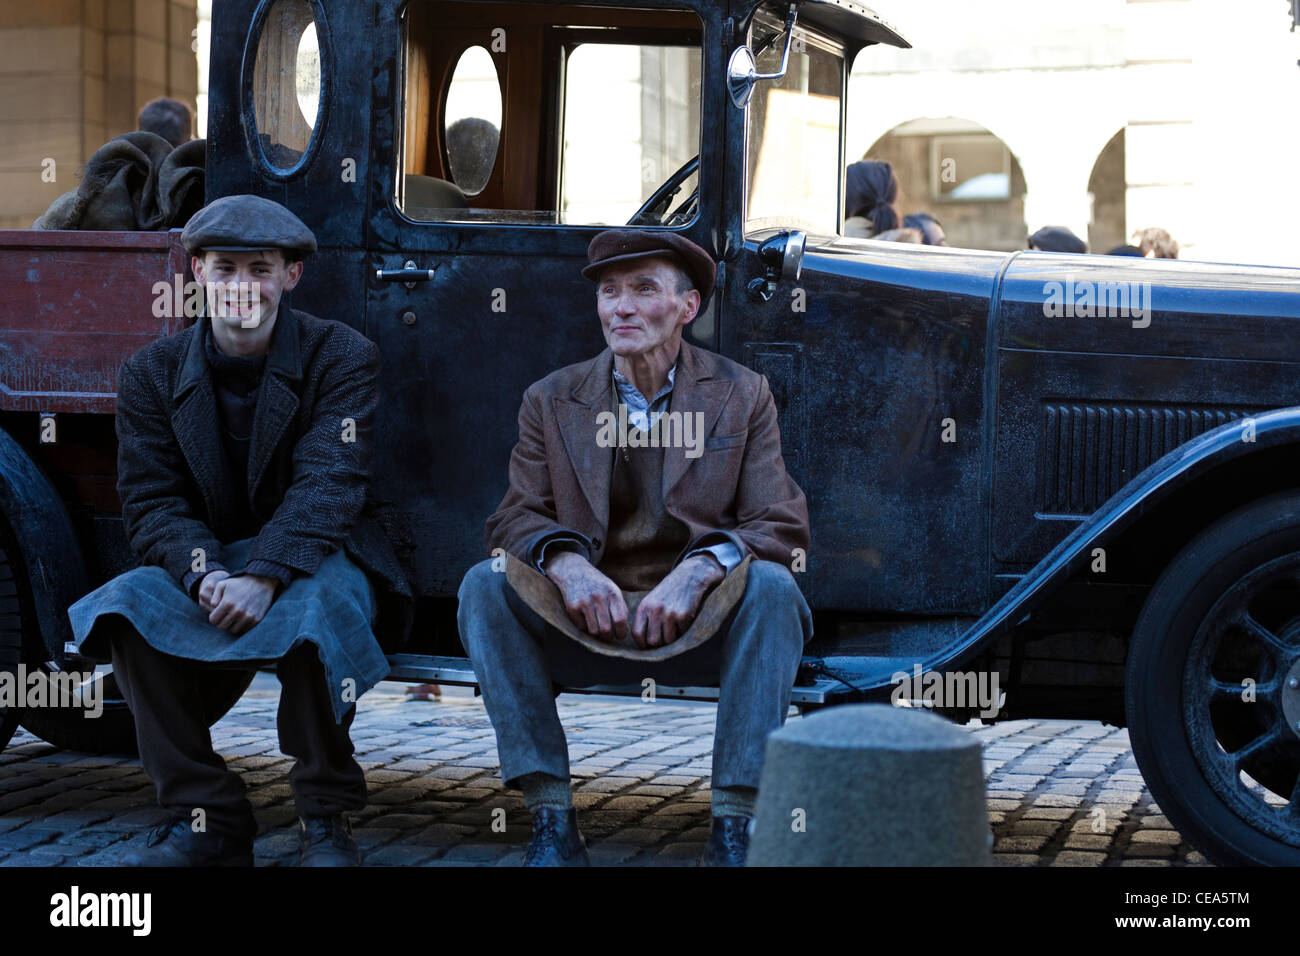 Mann und der junge in Vintage-Outfits gekleidet wie Köhler sitzt auf Schritt der alten LKW Edinburgh Schottland UK altmodisch Stockfoto